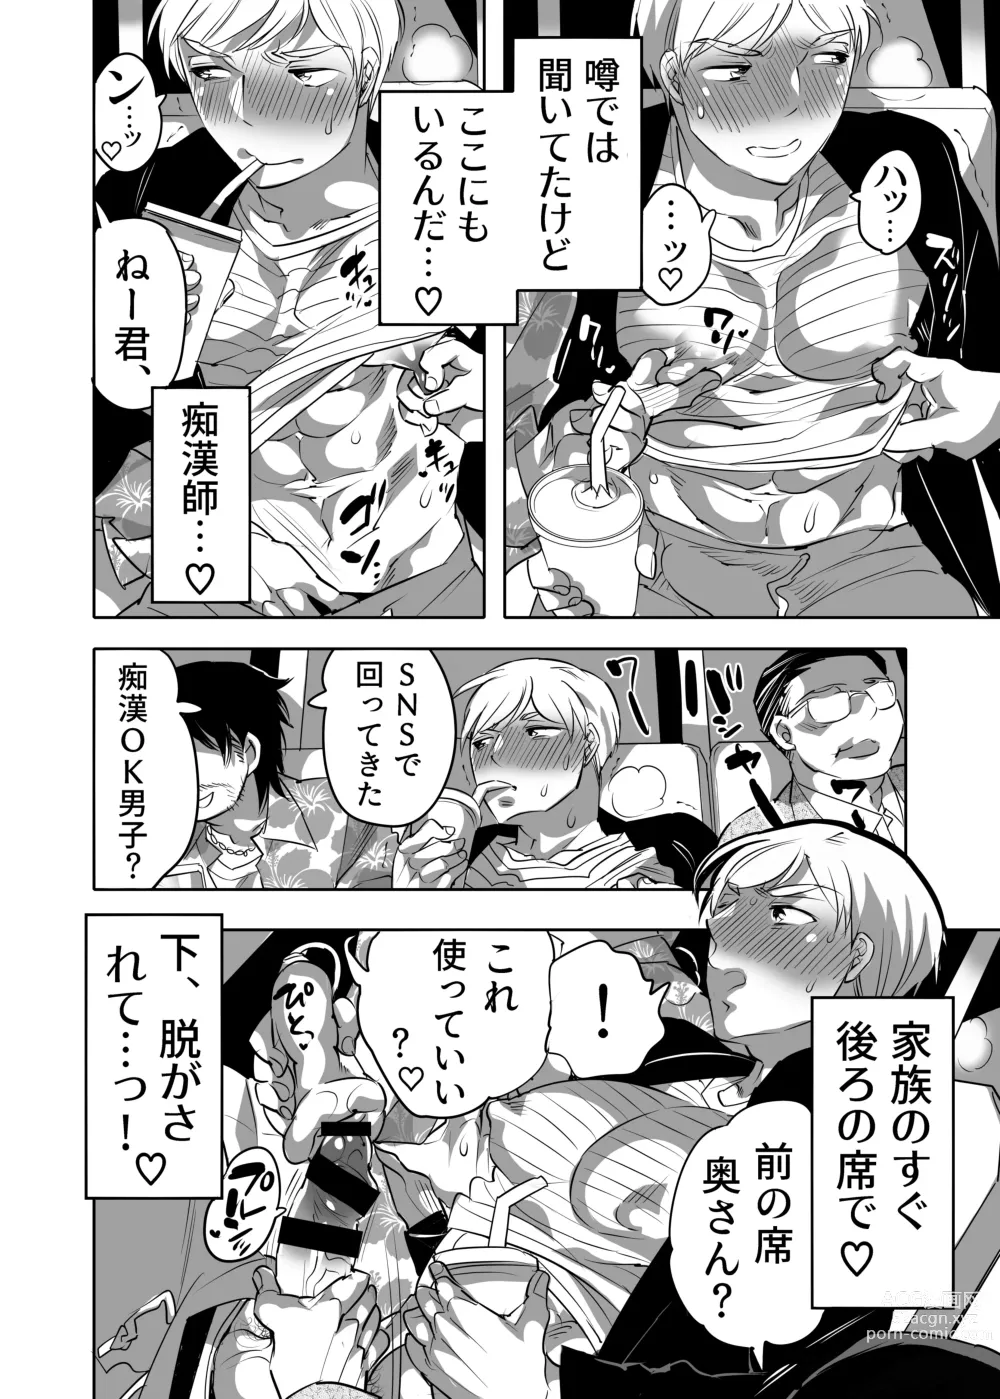 Page 8 of manga Abuso OK Prisionero Niño